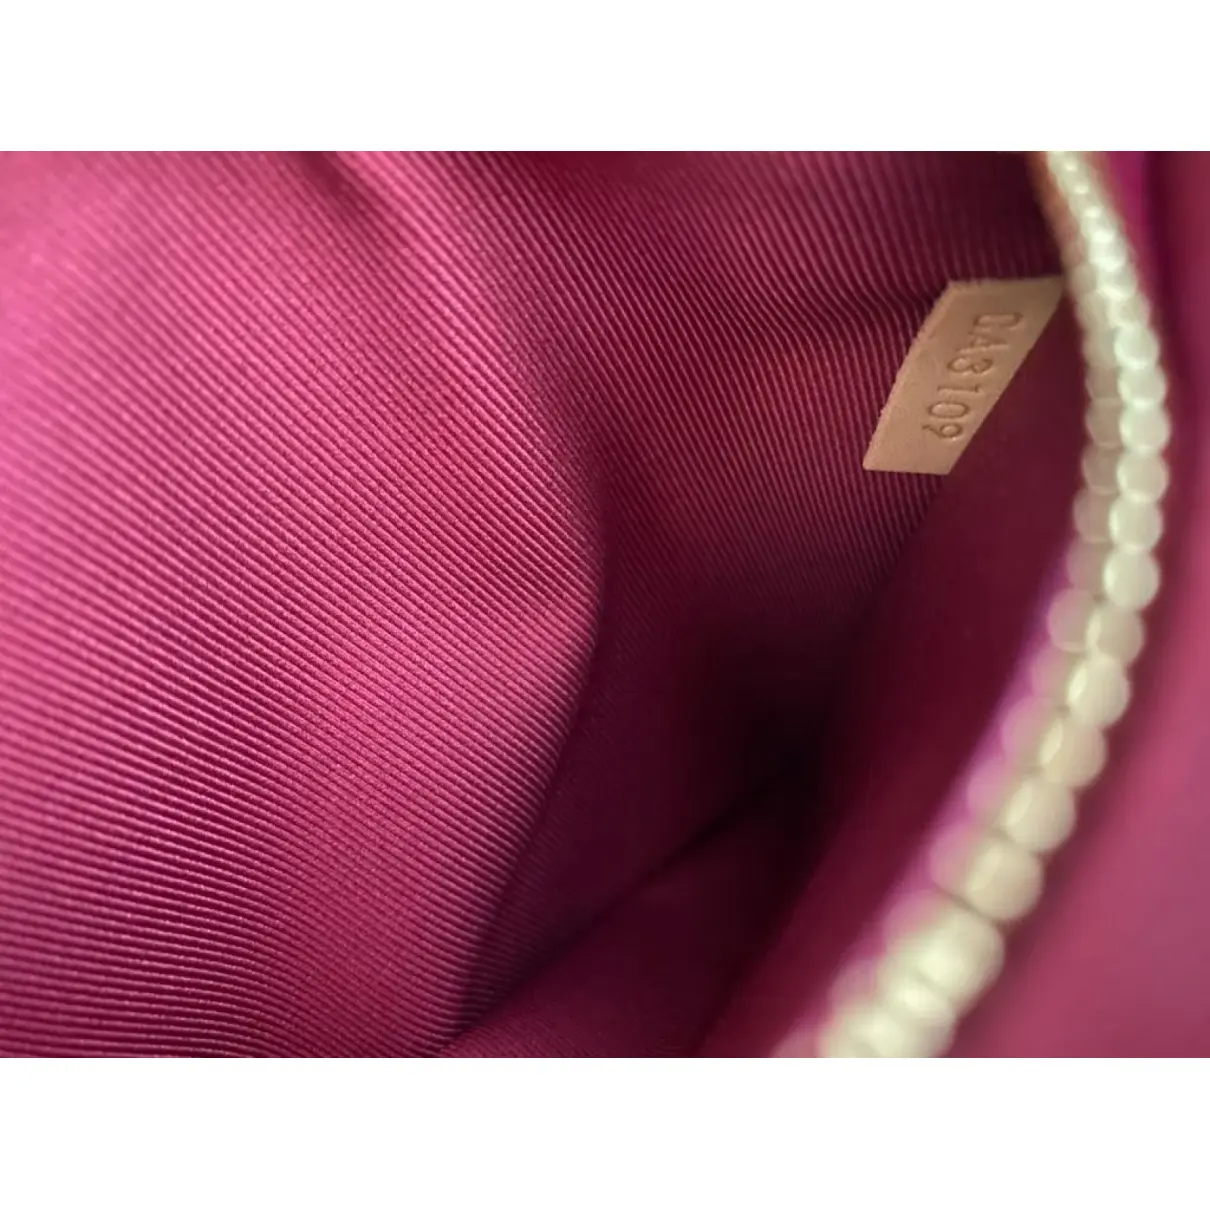 Cluny cloth handbag Louis Vuitton